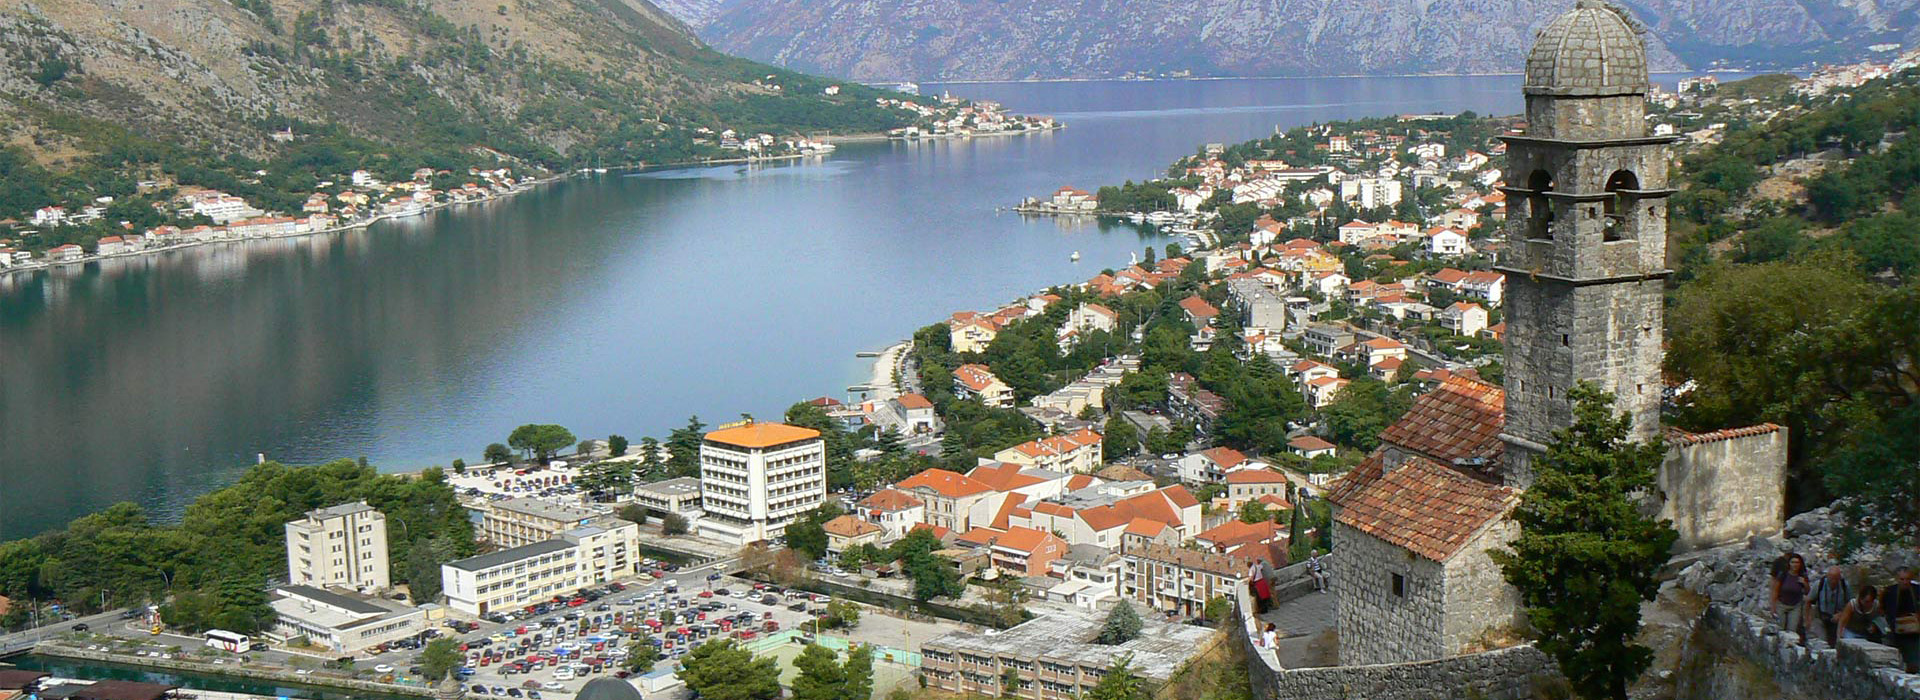 Montenegro walking guided holiday - Kotor